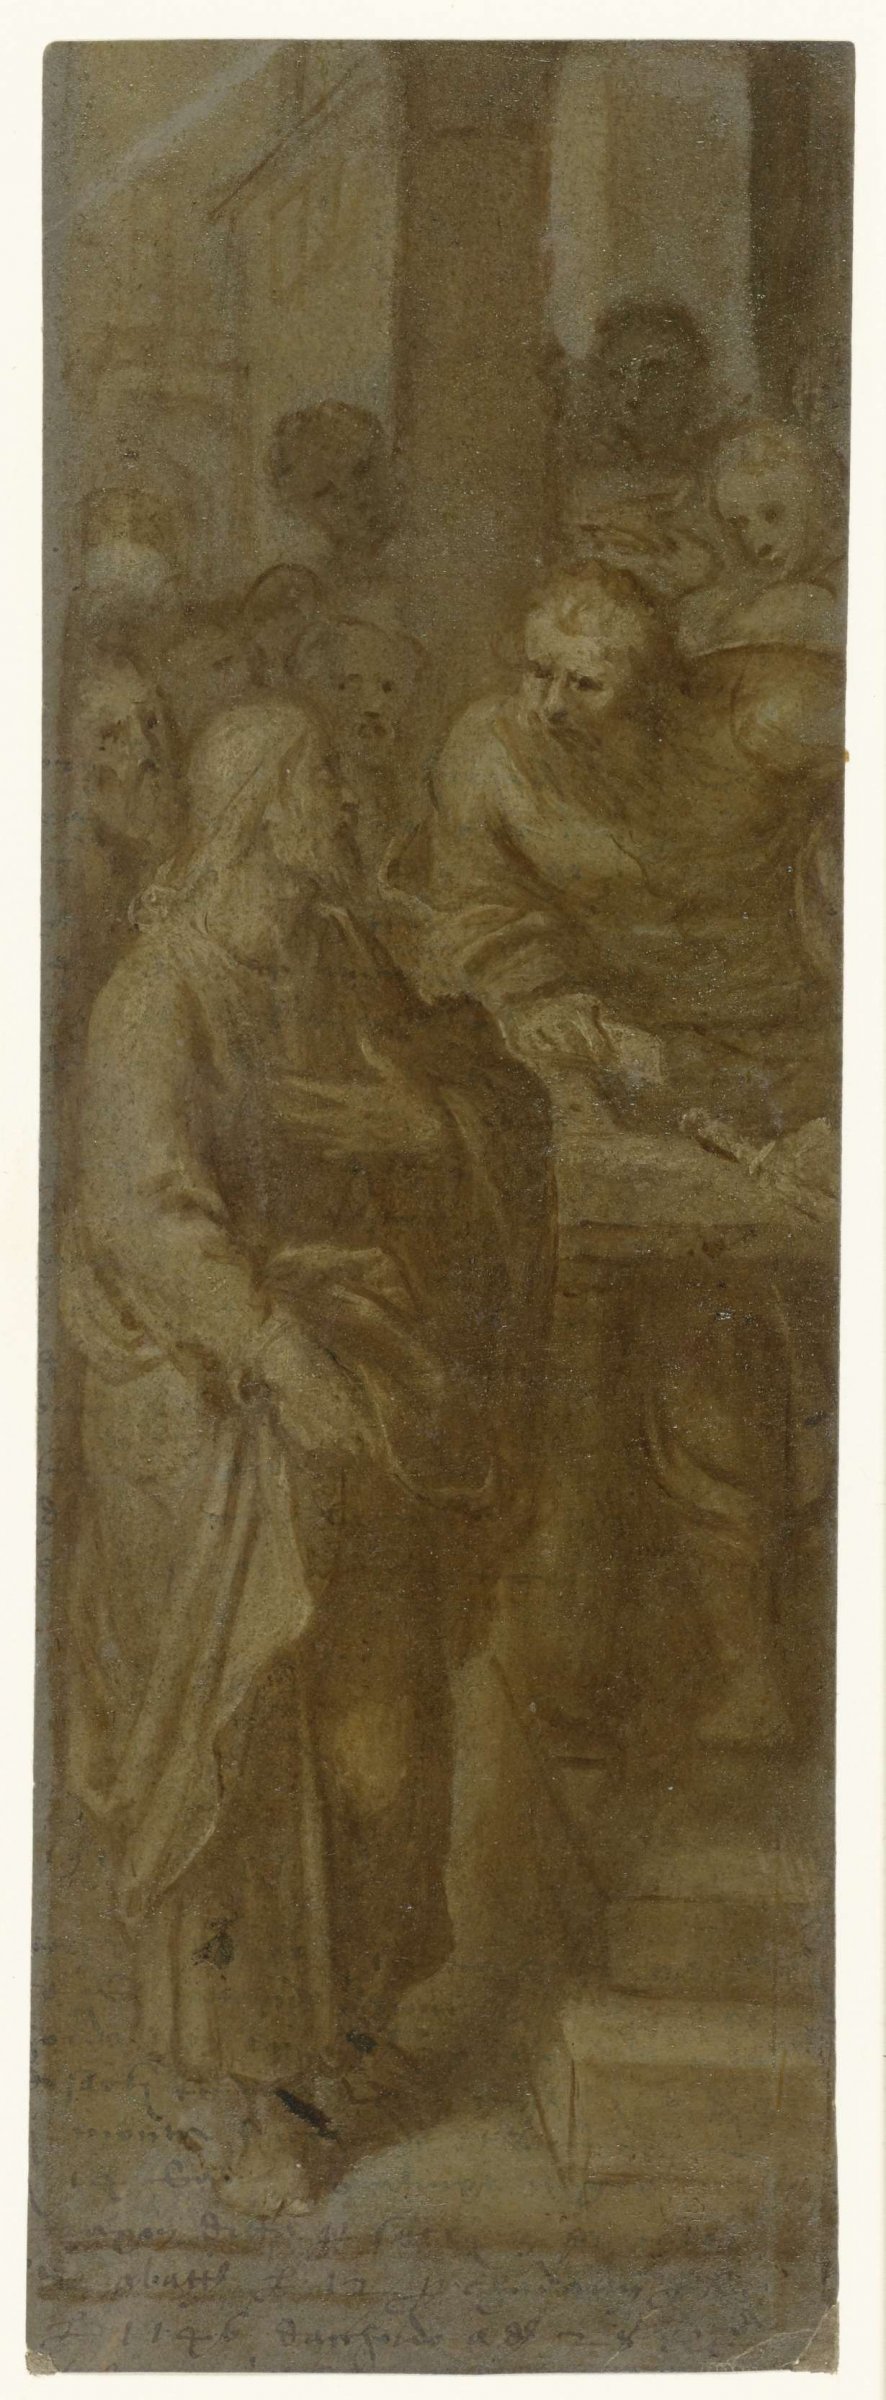 Calling of Matthew, Otto van Veen, 1600 - 1610